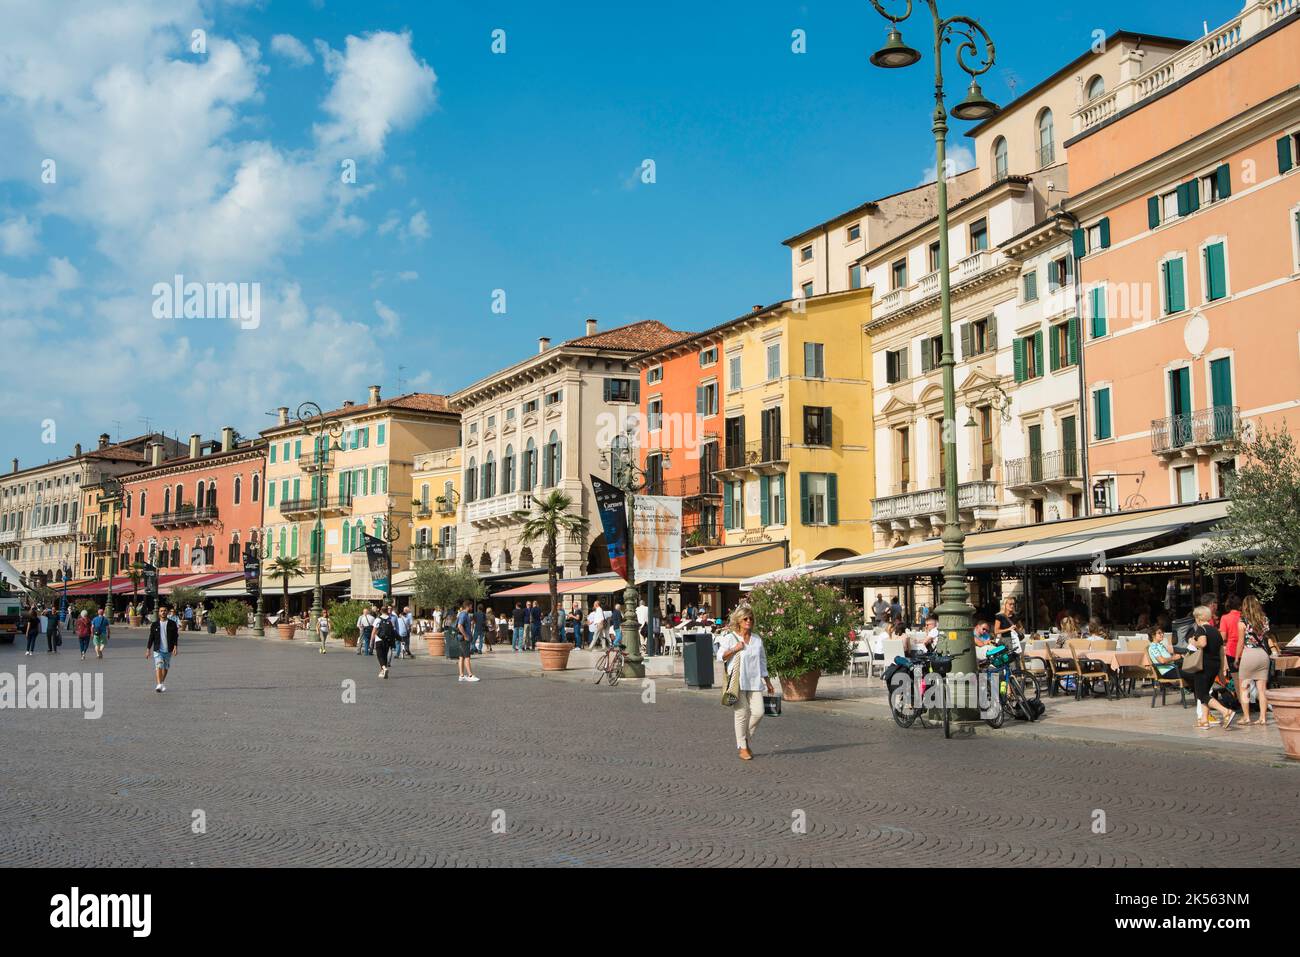 Piazza Bra Verona, vue en été de la partie ouest de Piazza Bra, une rangée colorée de cafés et restaurants connus sous le nom de Liston, Vérone, Vénétie Italie Banque D'Images